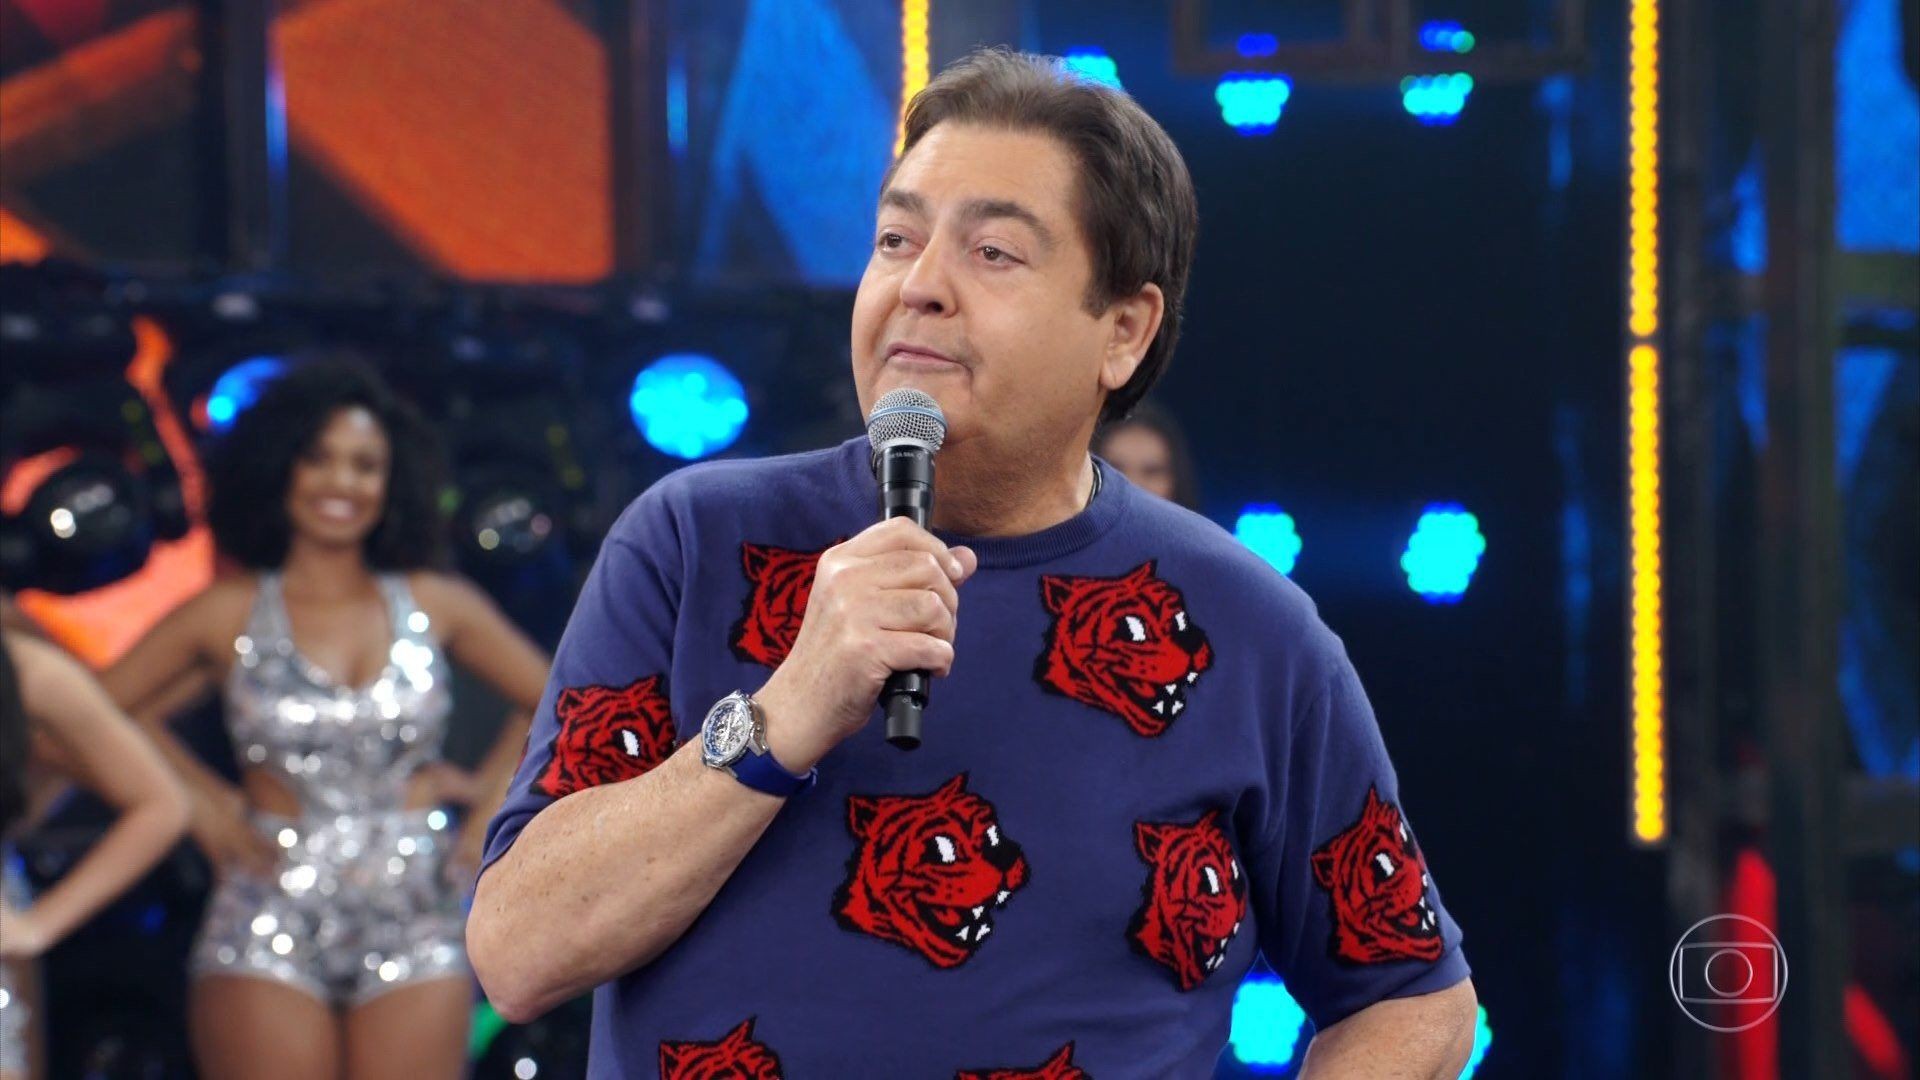 Faustão, especulado na Band em 2022, usa camiseta Moschino (Foto: Reprodução/TV Globo)